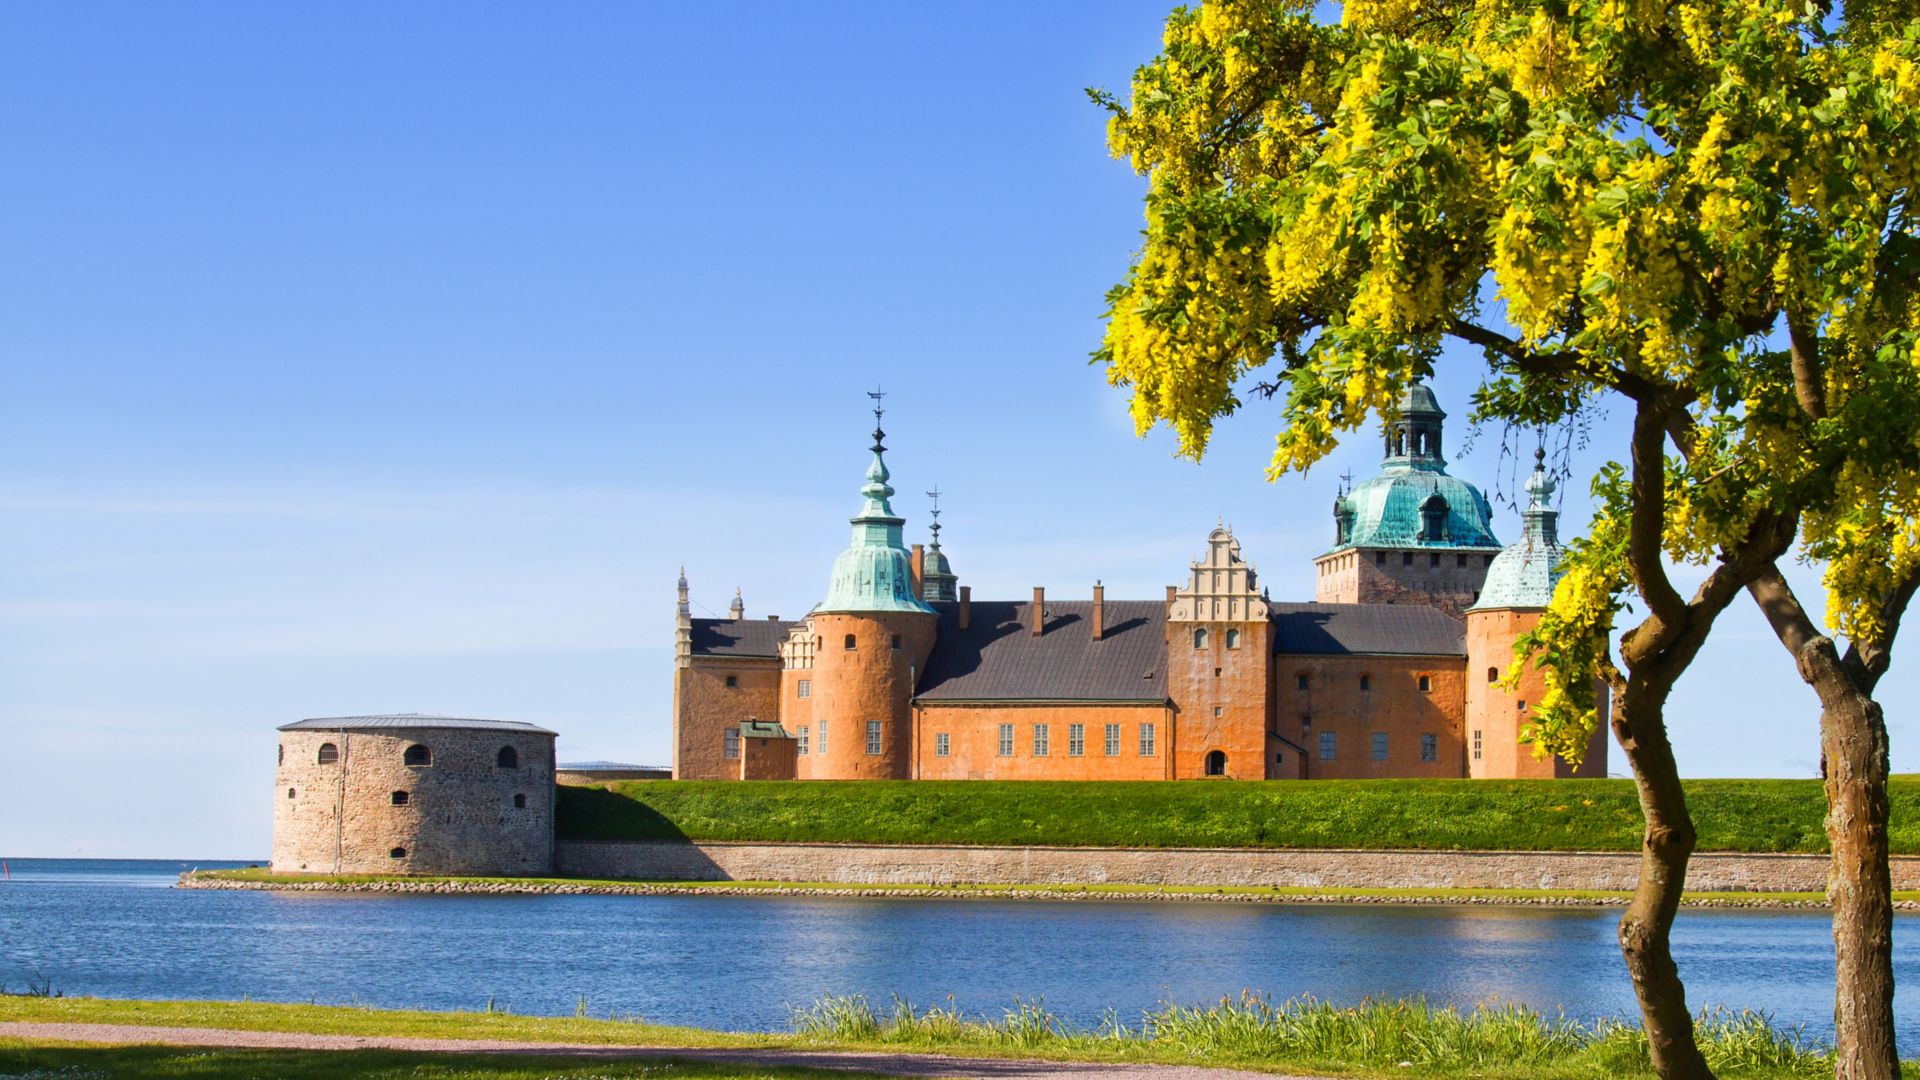 Średniowieczny zamek z czerwonym murem i niebieskimi wieżyczkami otoczony wodą, w słoneczny dzień w Kalmarze, Szwecja